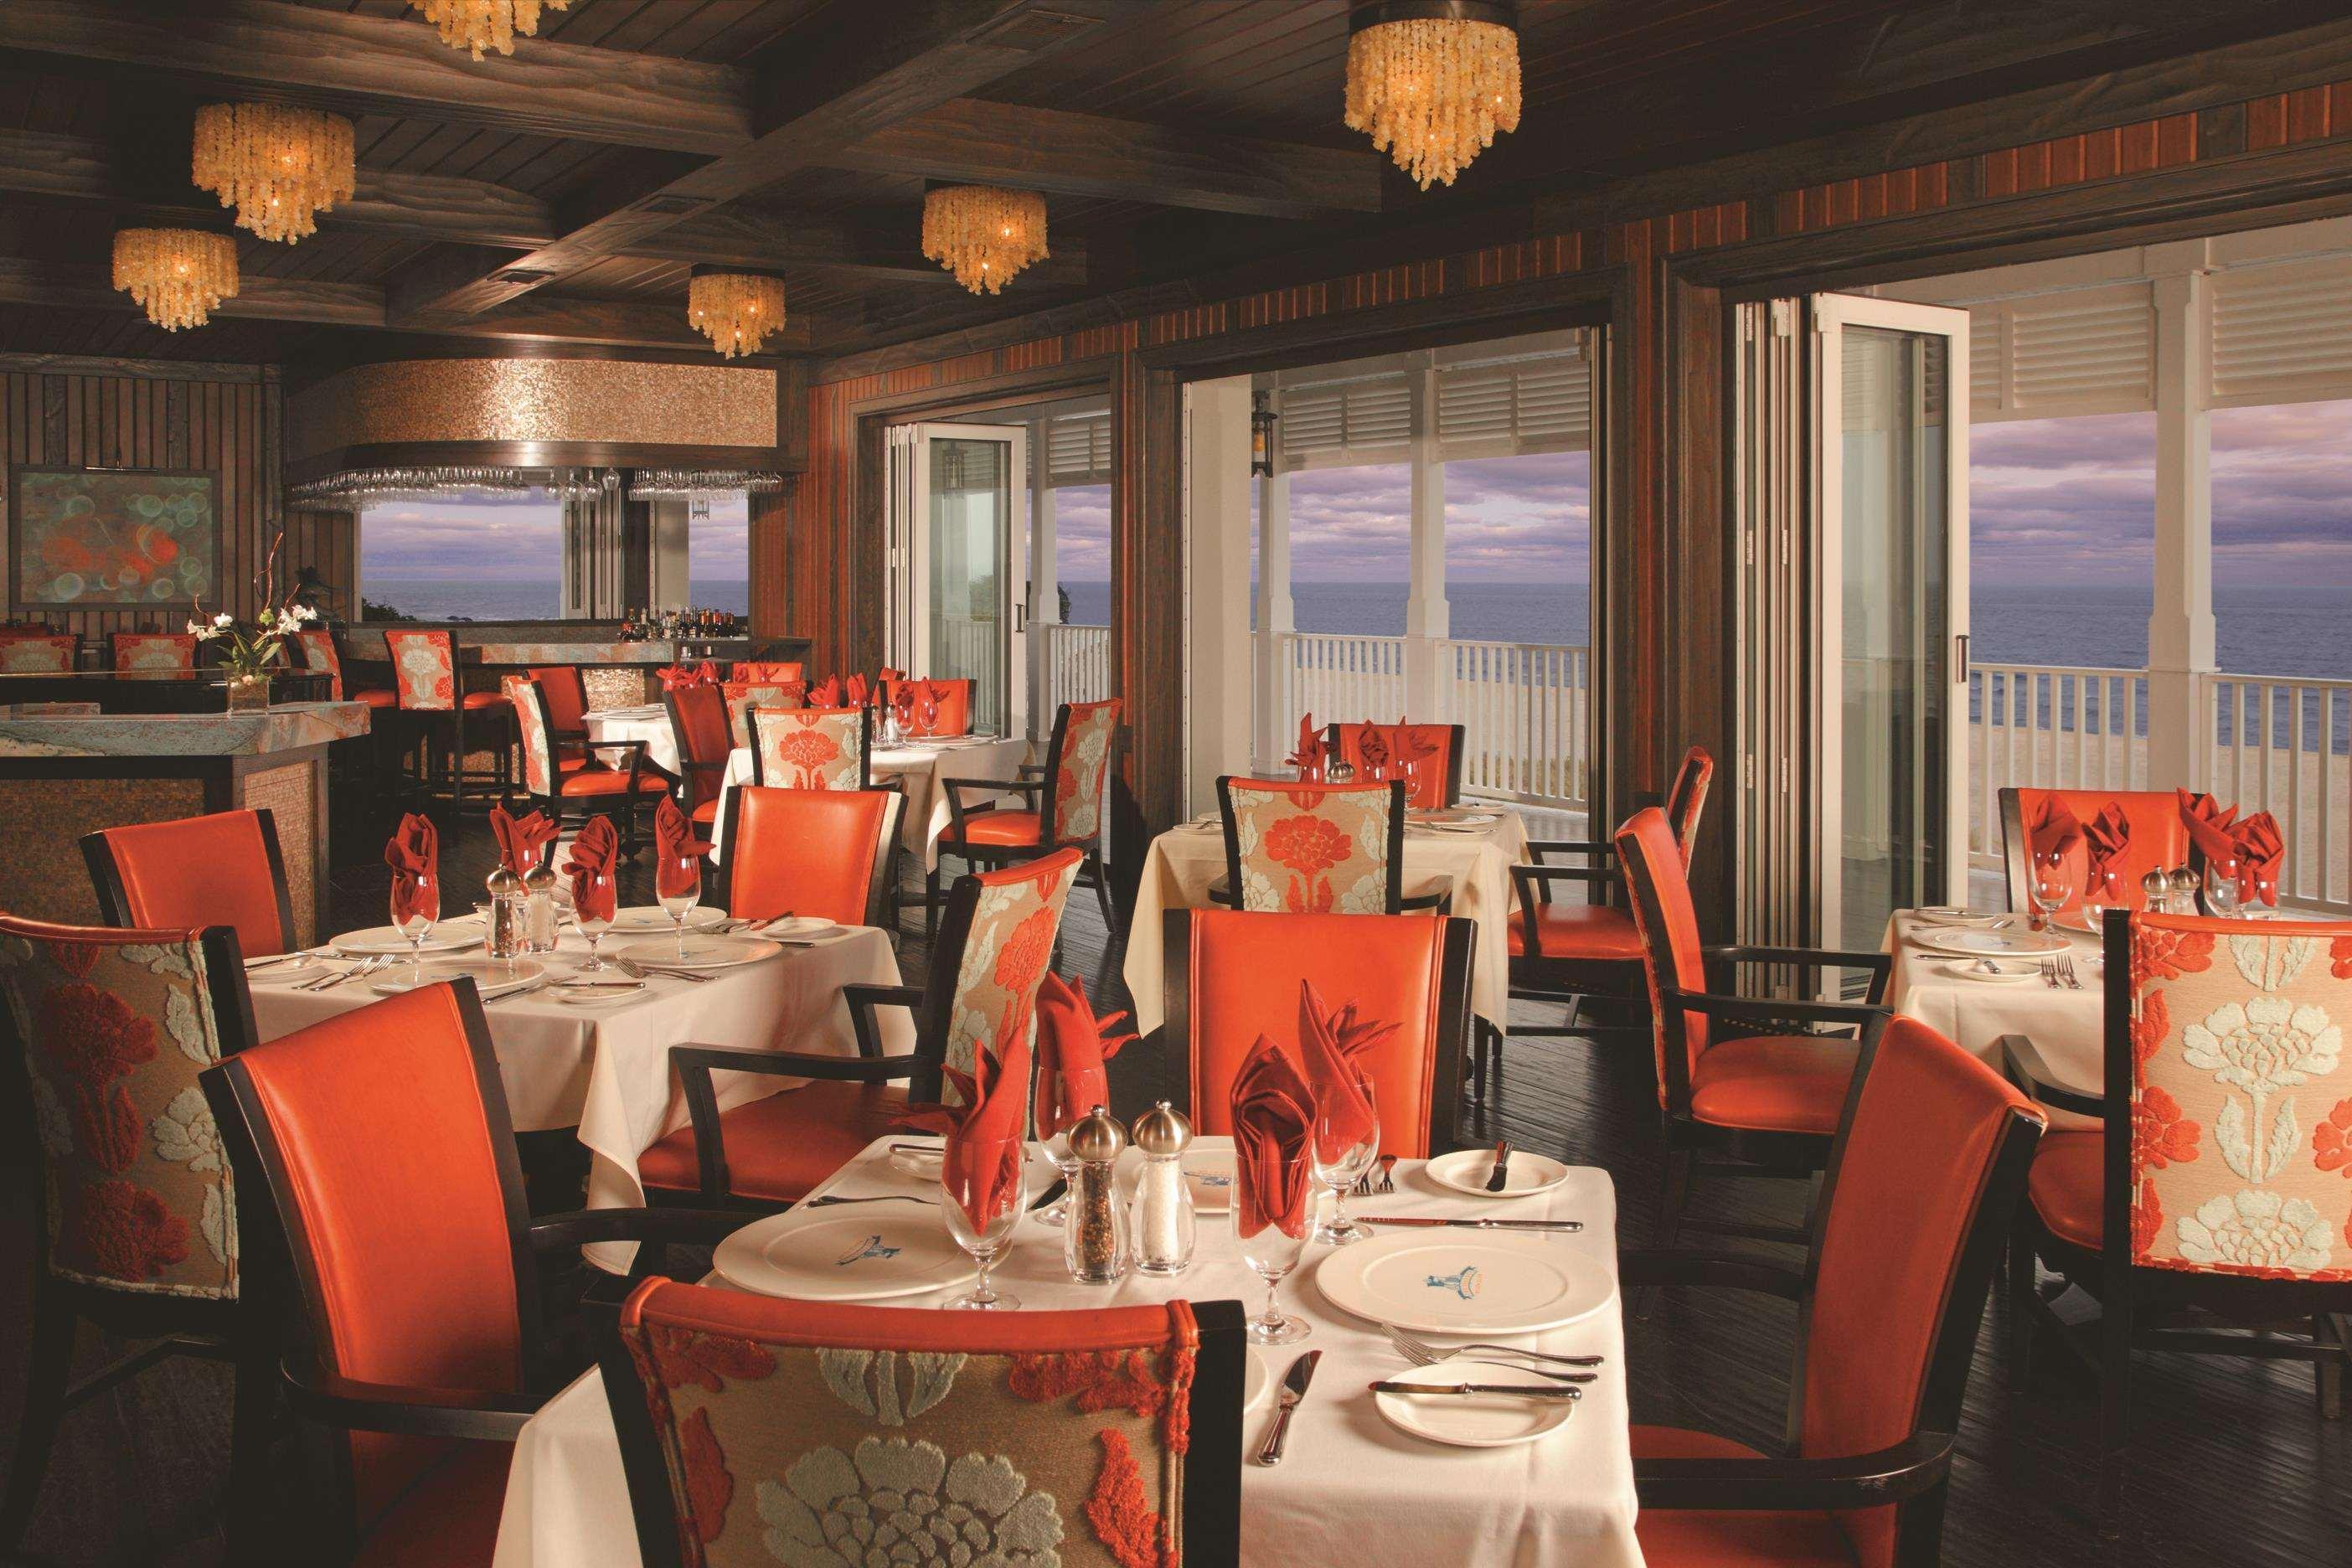 The Seagate Hotel & Spa Delray Beach Restaurant photo